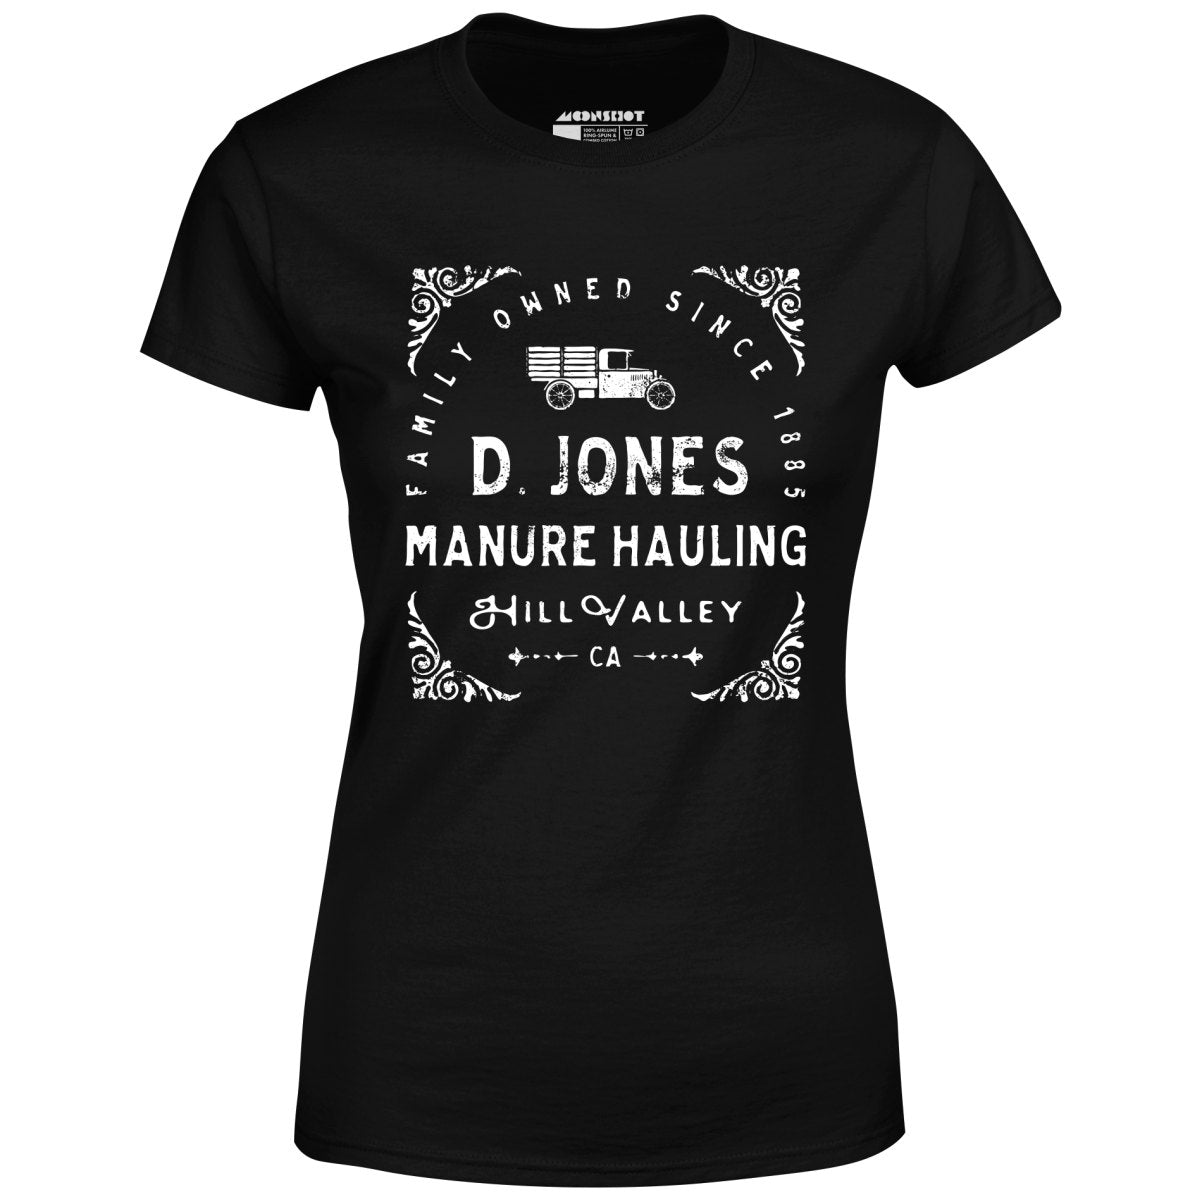 D. Jones Manure Hauling - Hill Valley - Women's T-Shirt